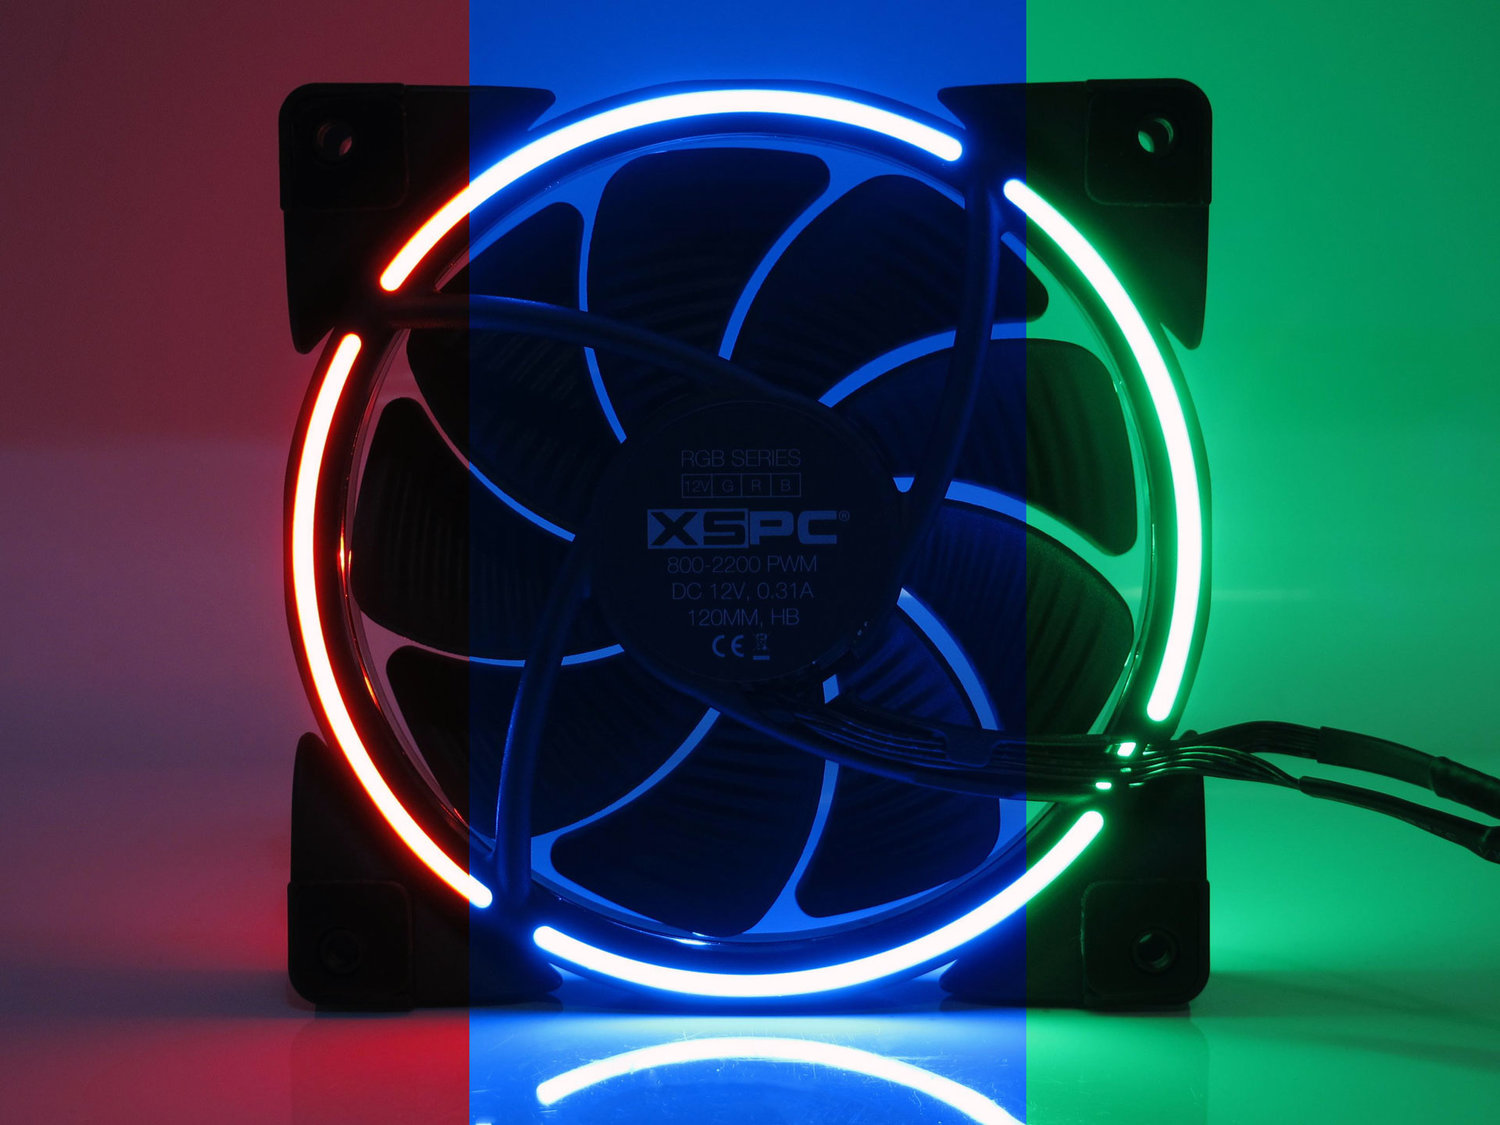 RGB 120mm Fan - 800-2200RPM - 12V, 4-Pin, RGB — XSPC Performance PC Water